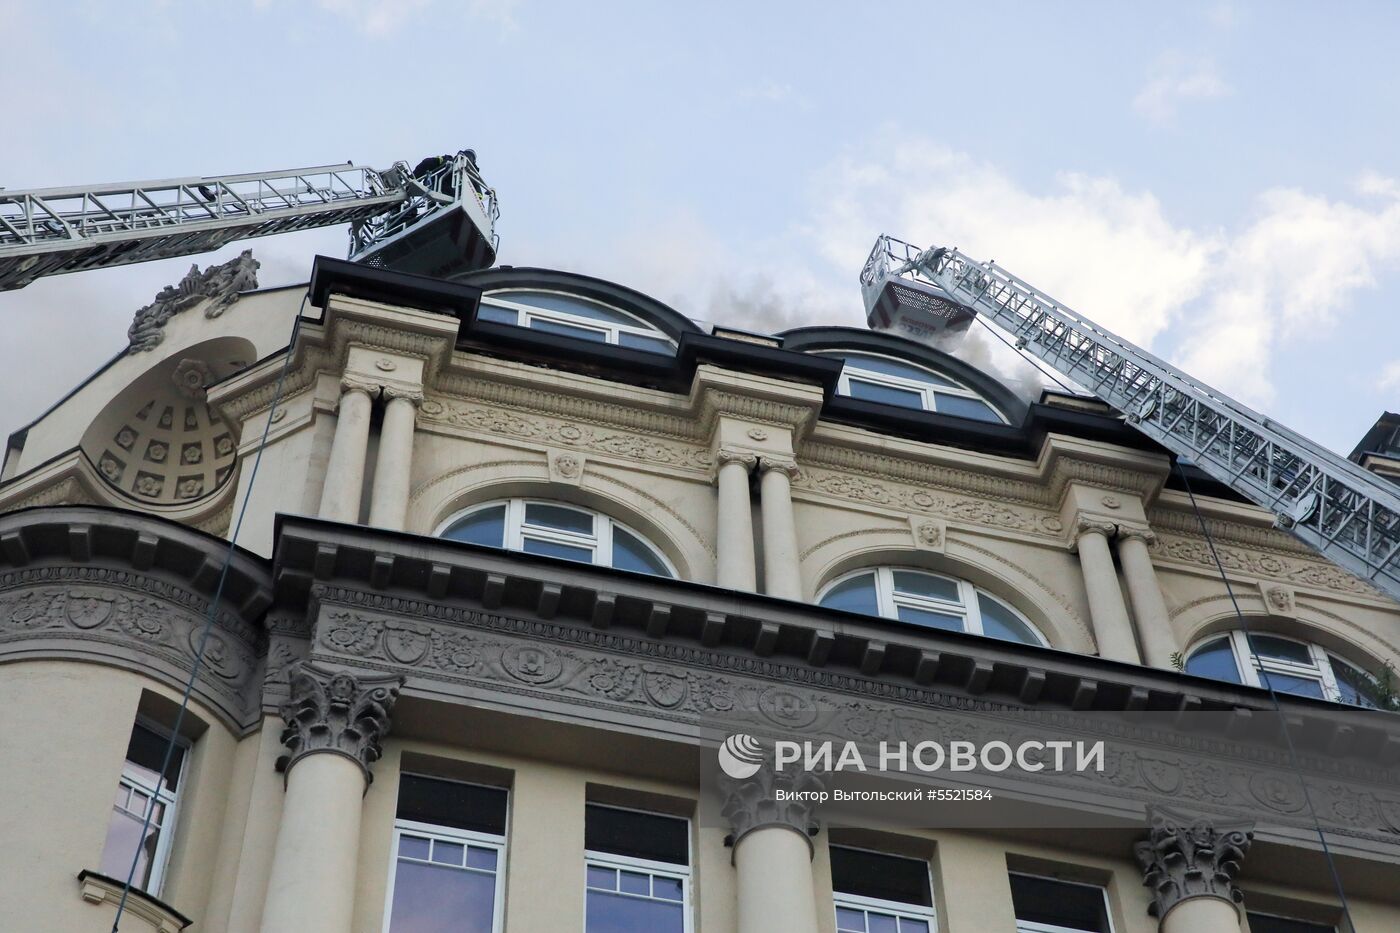 Возгорание на крыше Дома педагогической книги в Москве